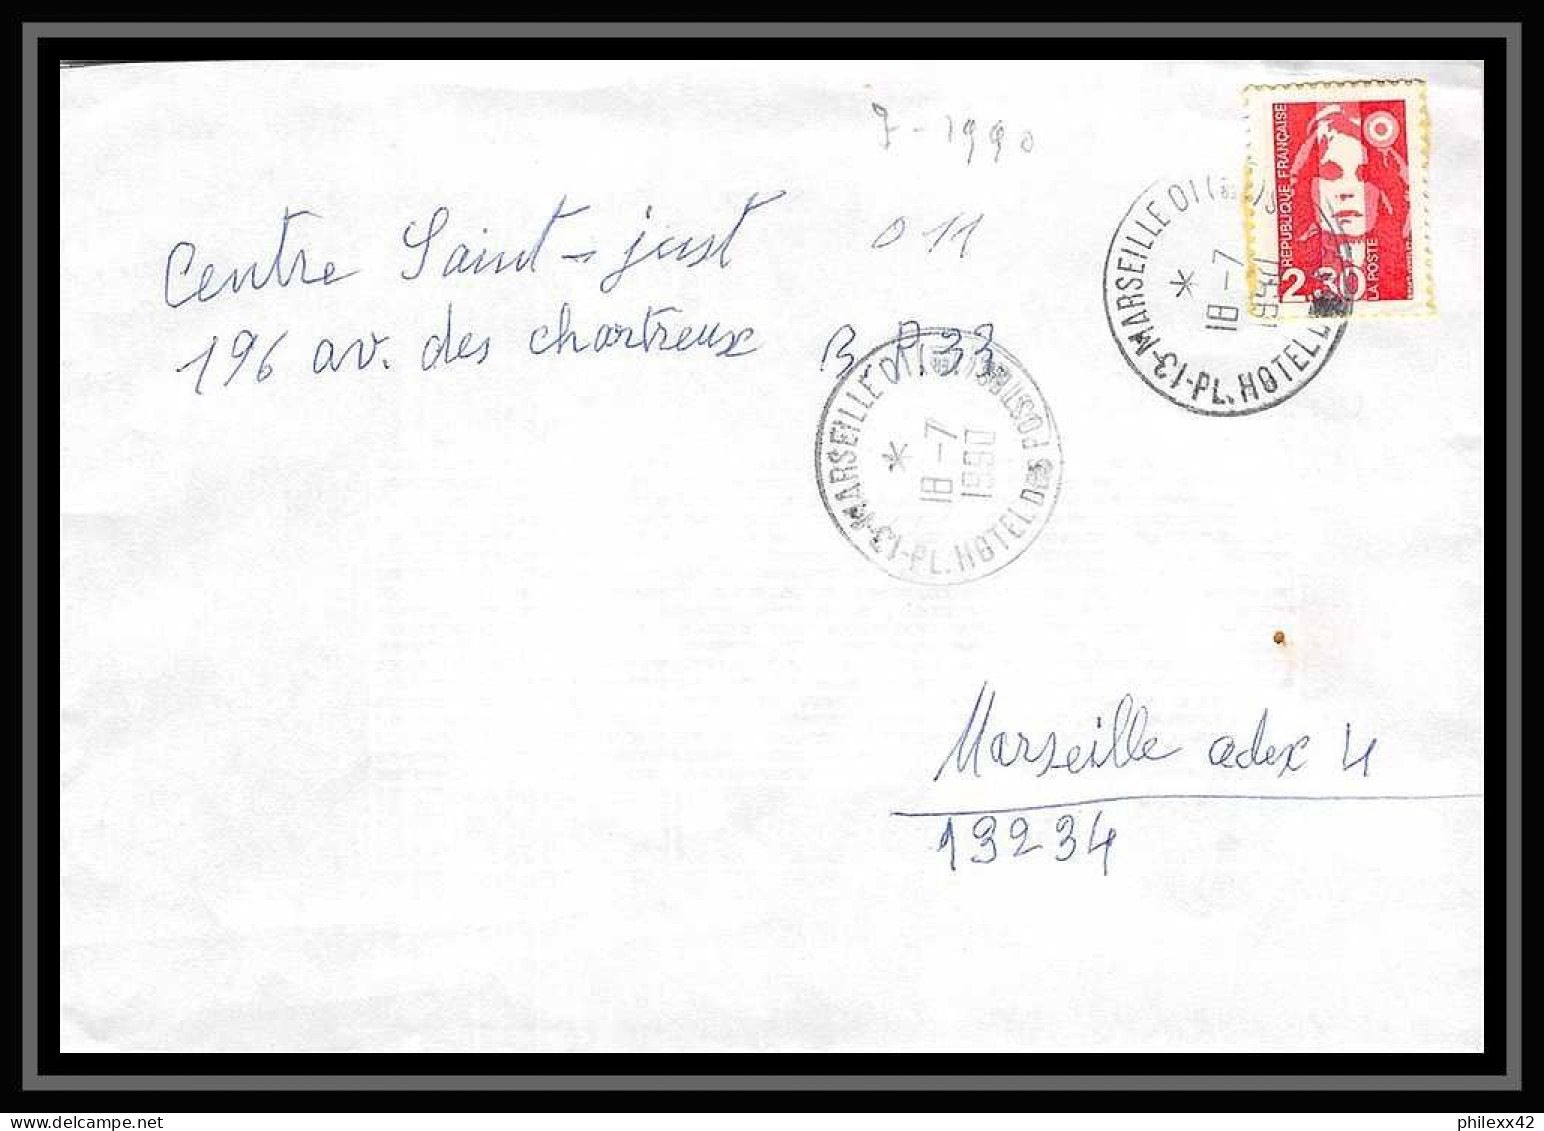 116379 lot de 15 Lettres cover Bouches du rhone flammes diverses Marseille Hotel des postes